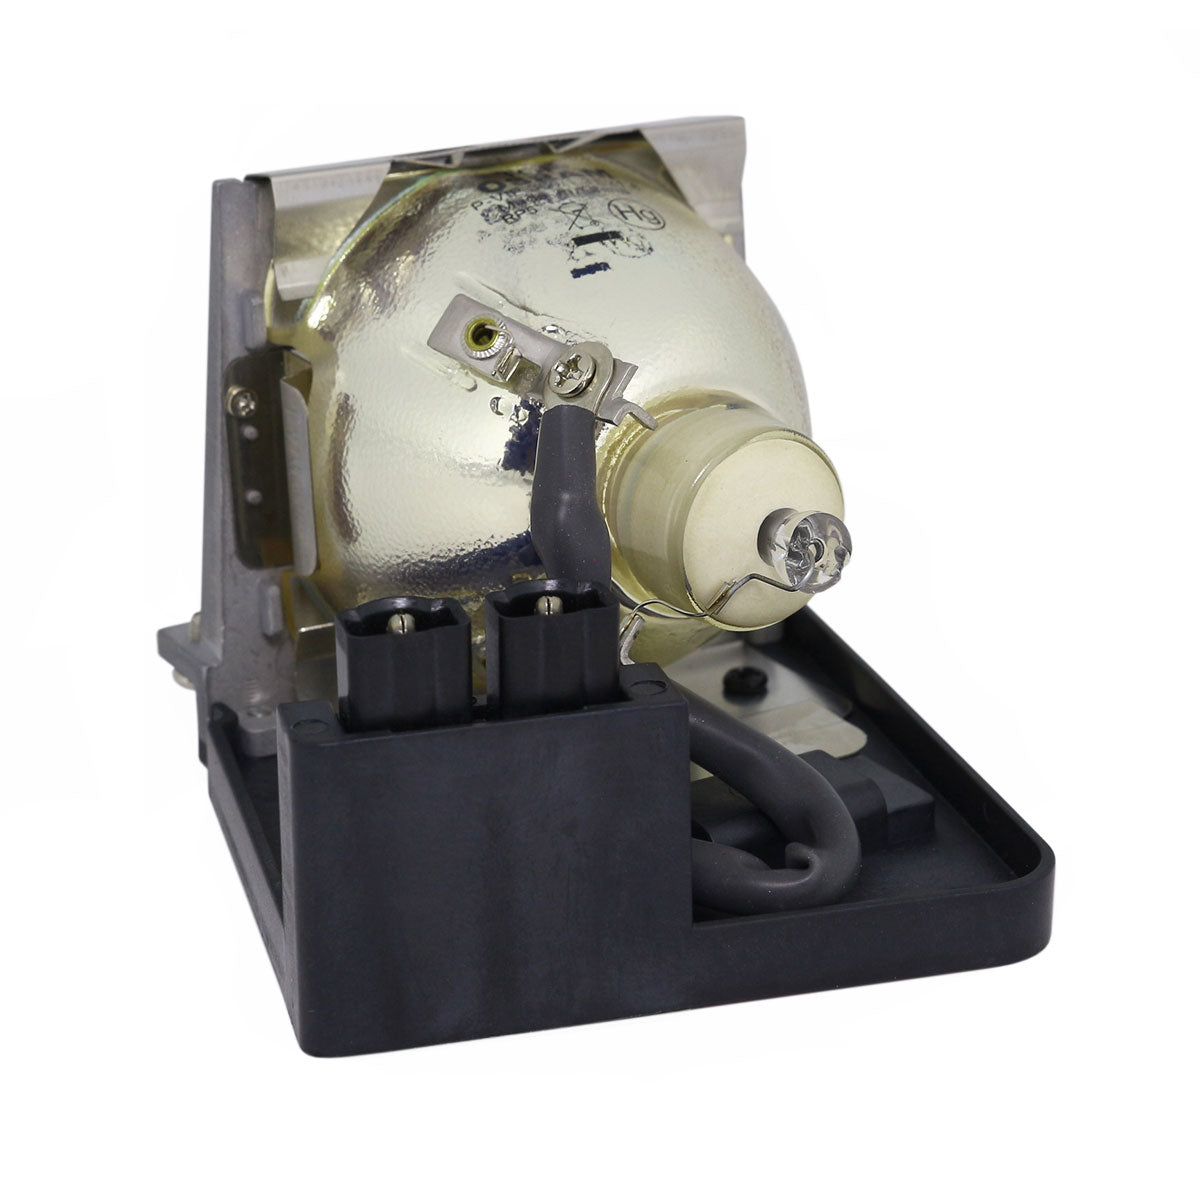 Kindermann 8954 Osram Projector Lamp Module